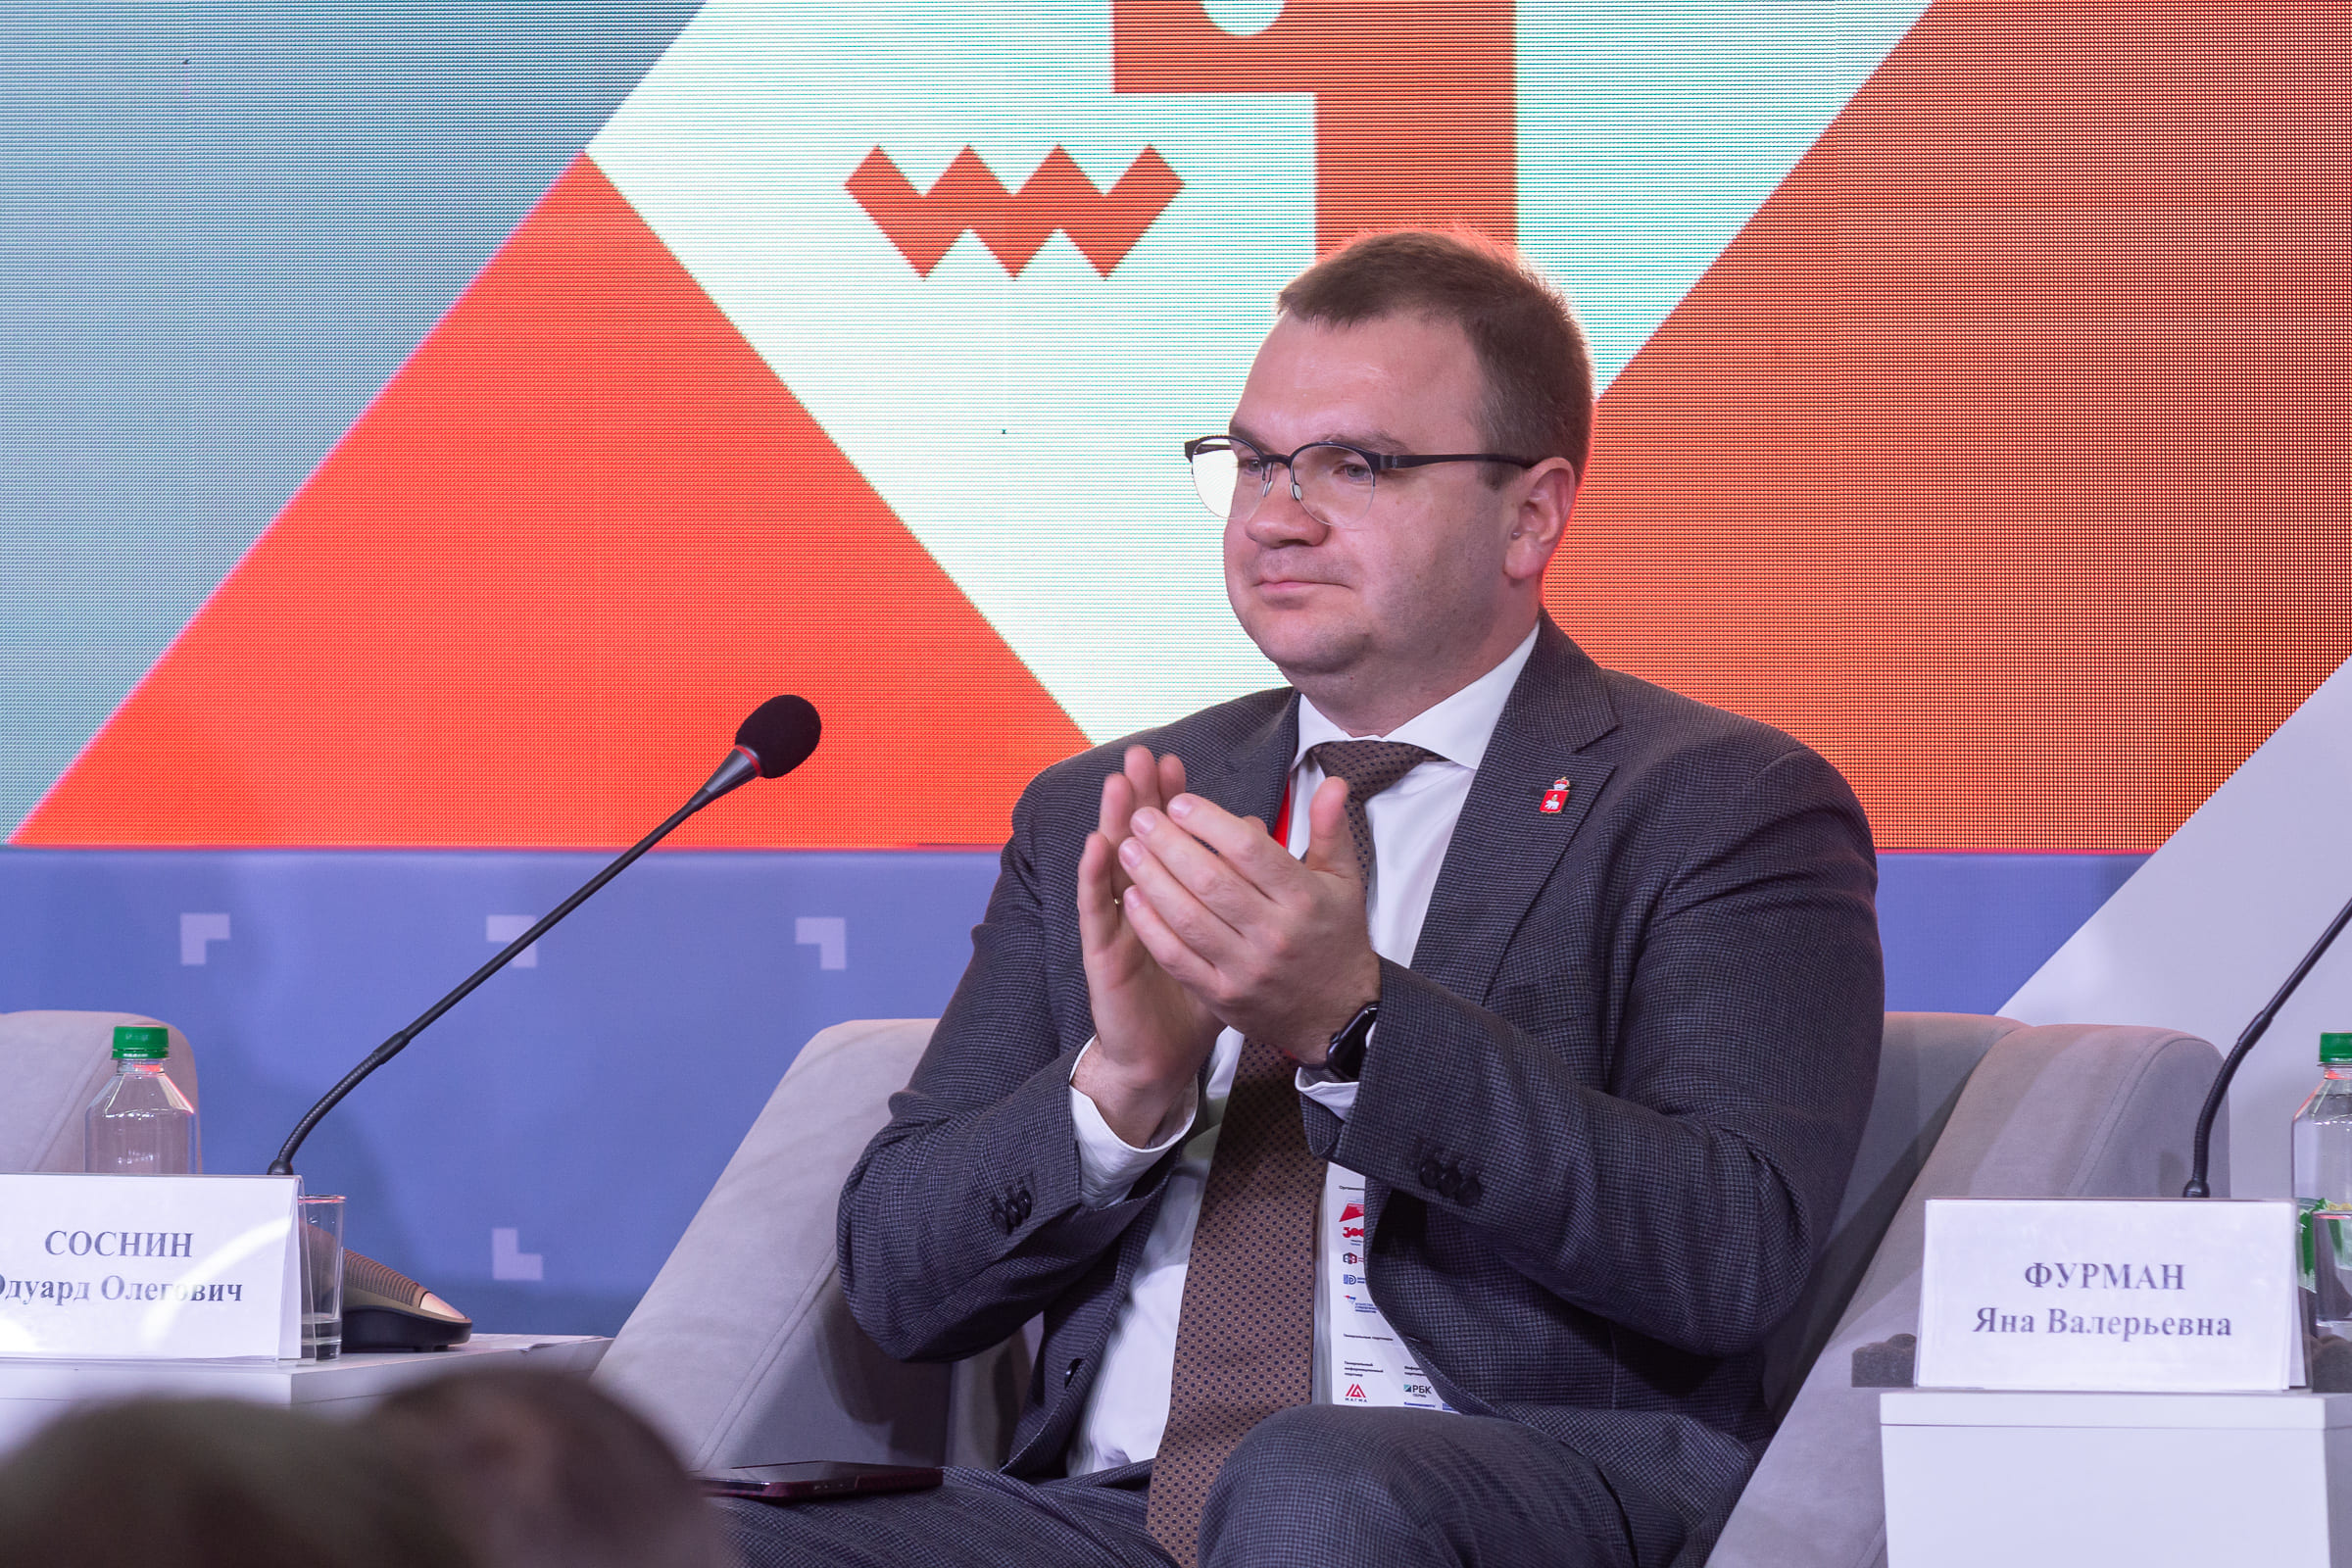 Глава министерства экономического развития Пермского края Соснин стал кандидатом на пост мэра Перми